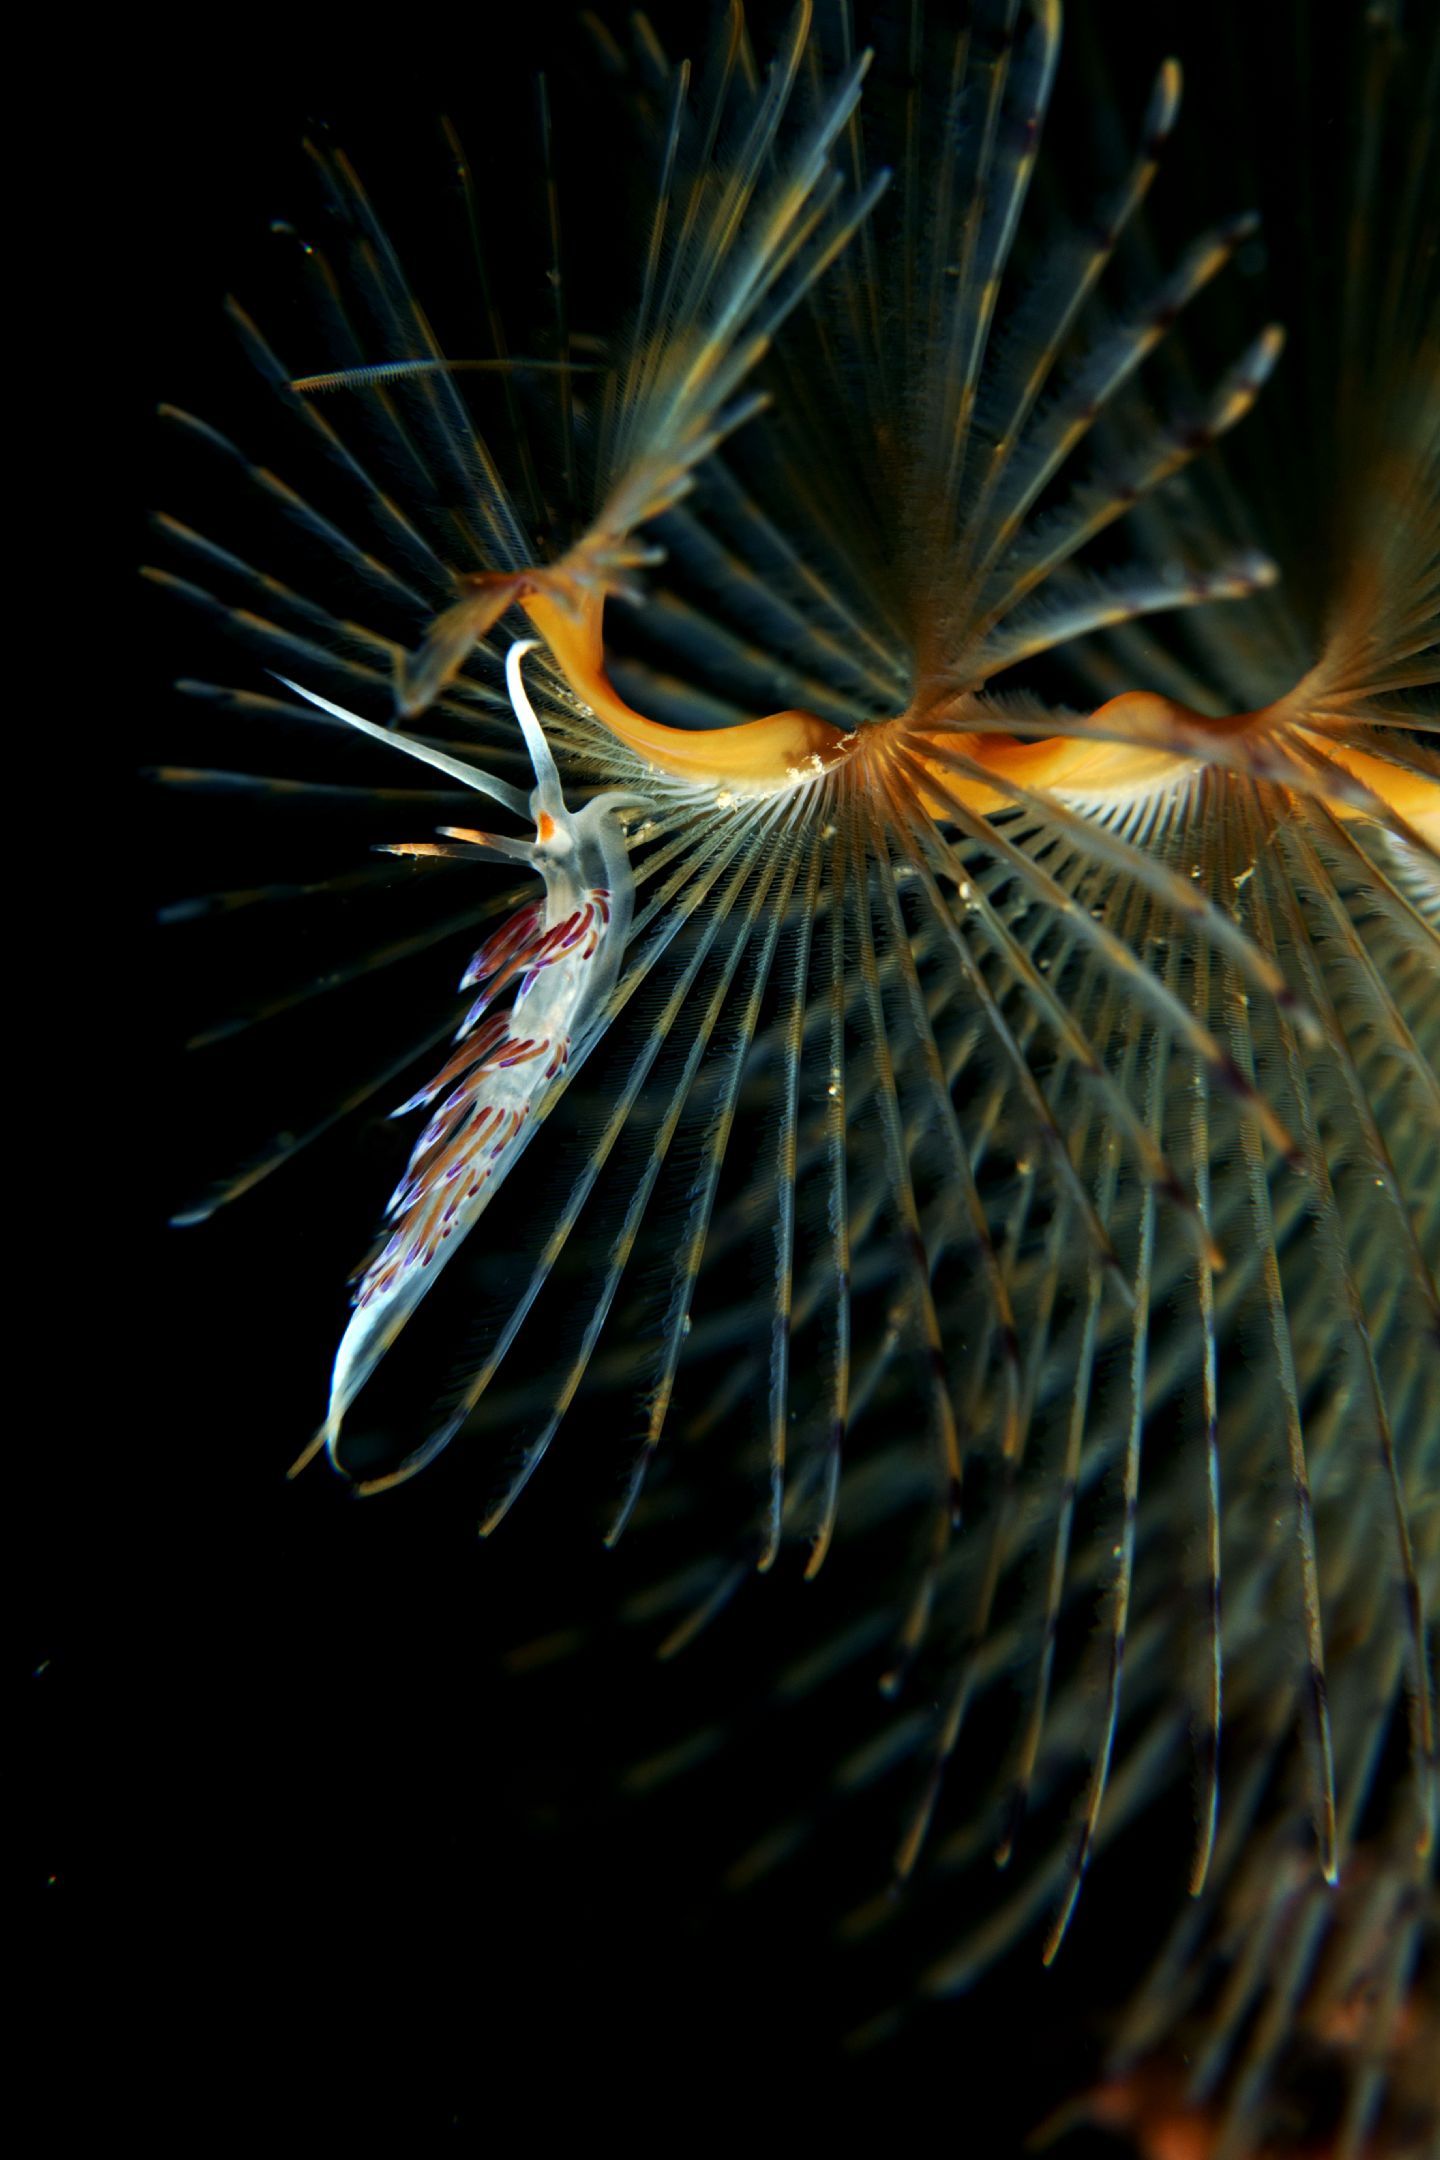 Raccolta di nudibranchi del Mar Piccolo